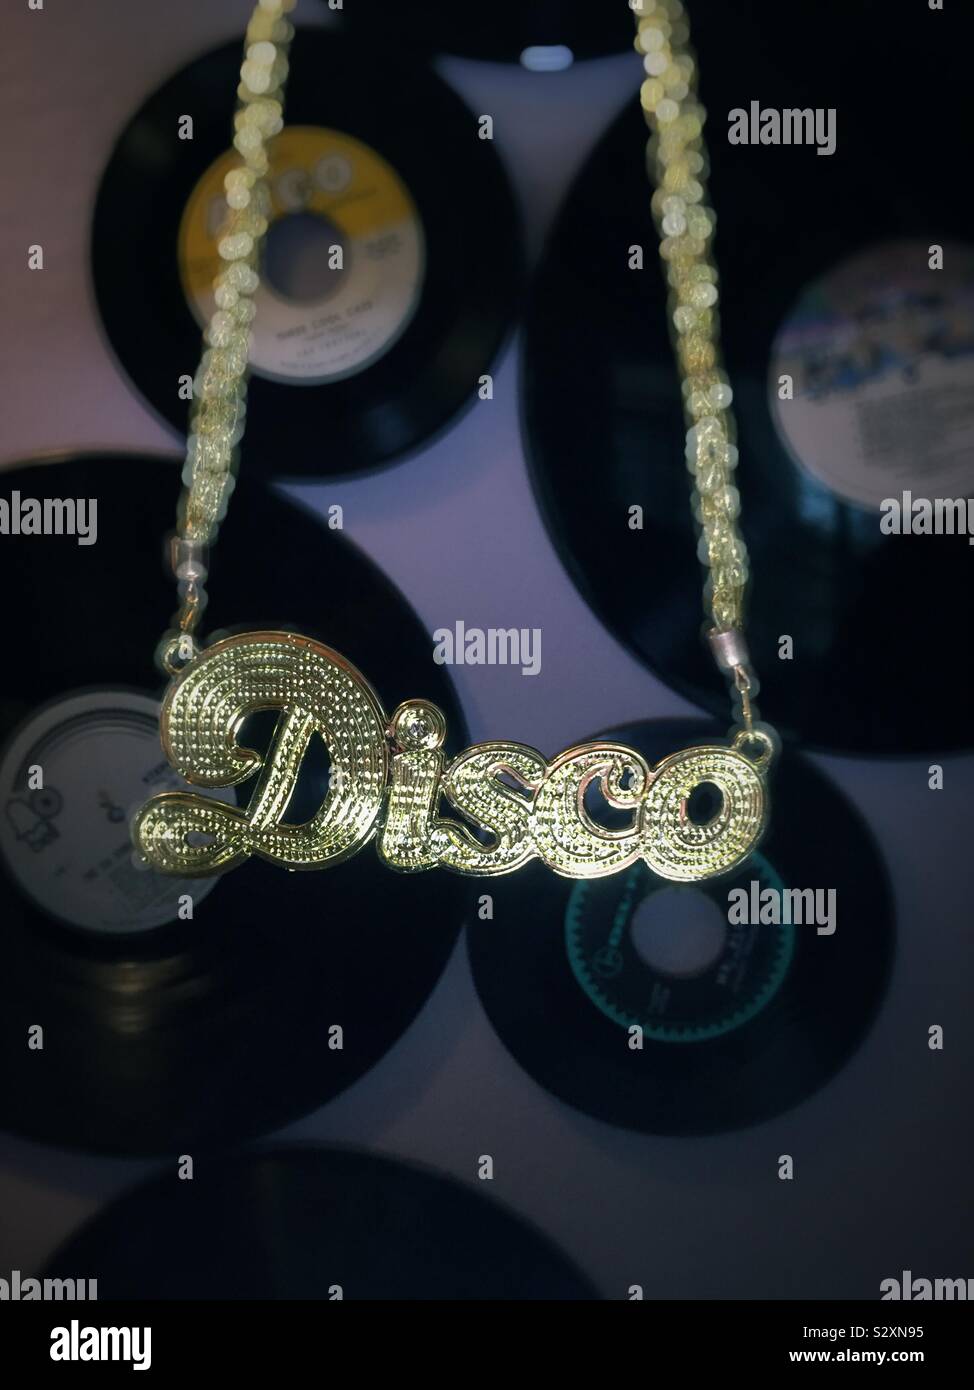 In der Nähe einer disco Kette vor den Schallplatten, USA Stockfotografie -  Alamy